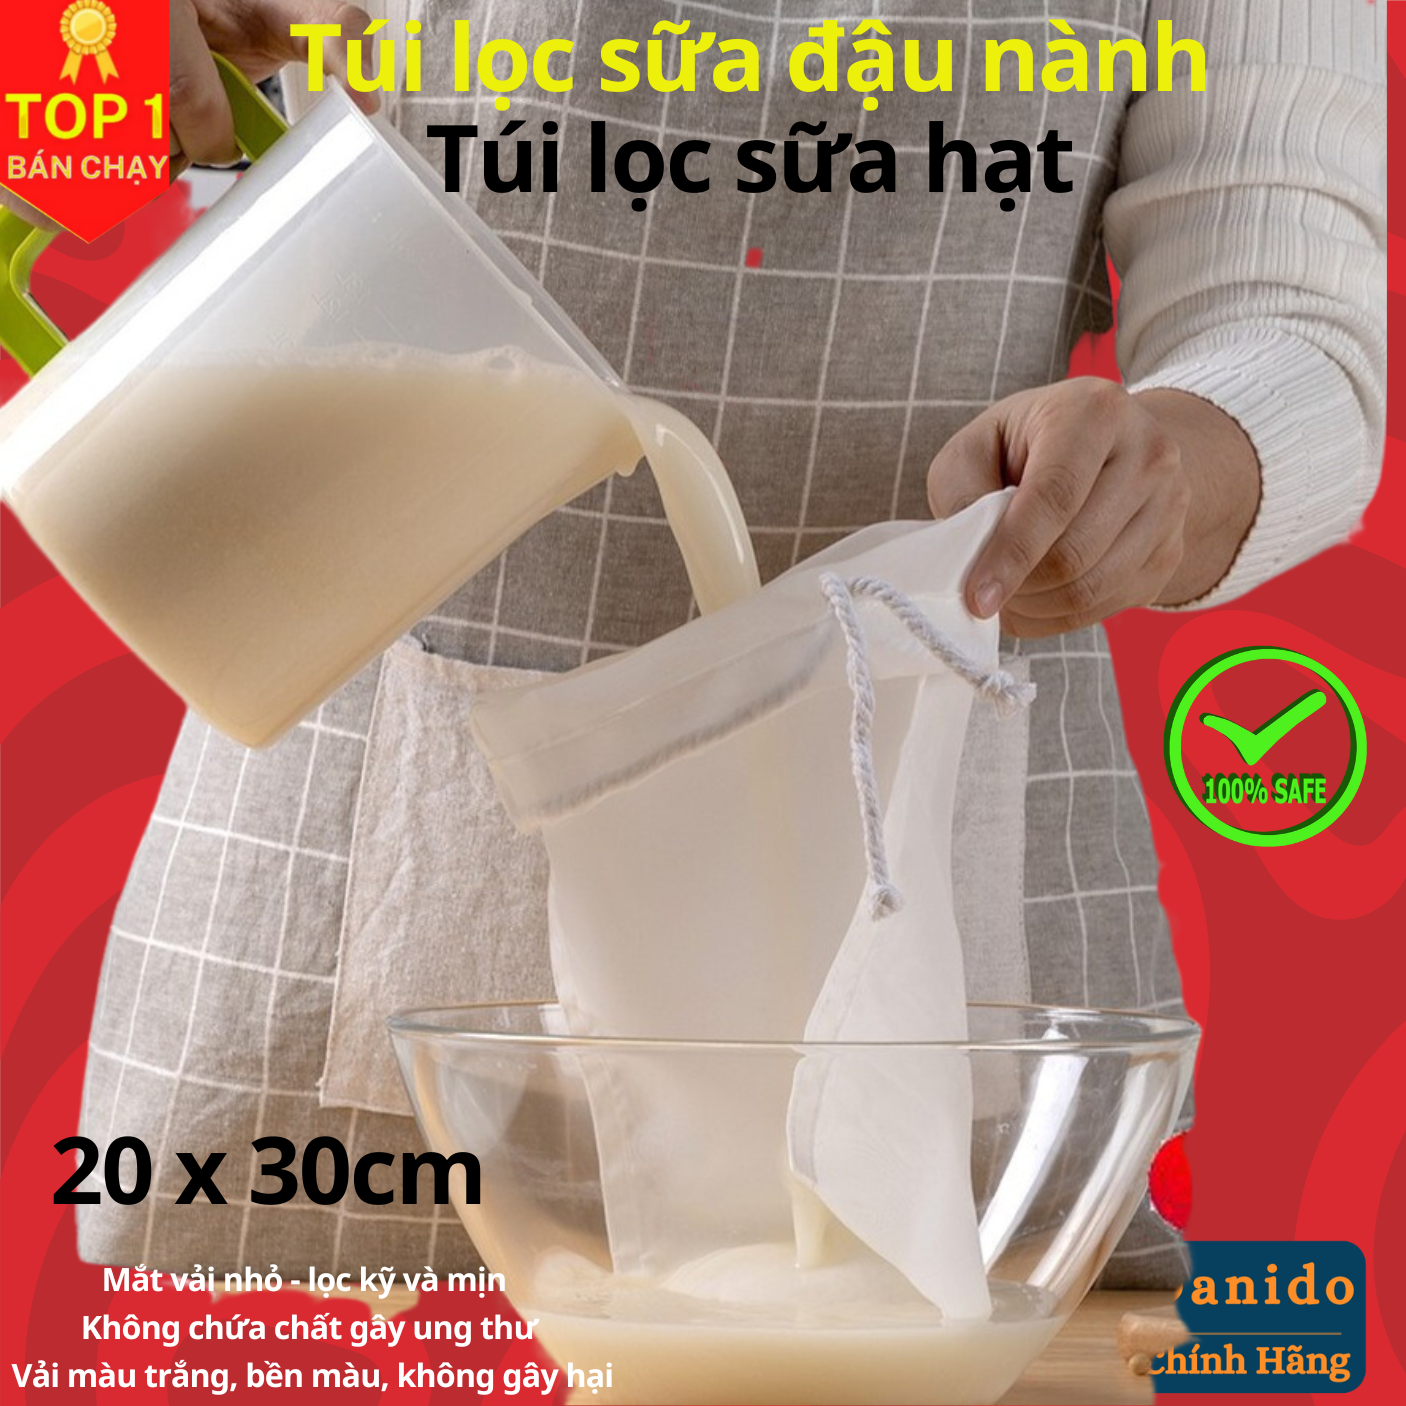 Túi lọc sữa đậu nành, túi lọc sữa hạt, túi lọc trà, lọc gia vị cao cấp - Túi lọc đa năng vải Nhật hàng chính hãng D Danido